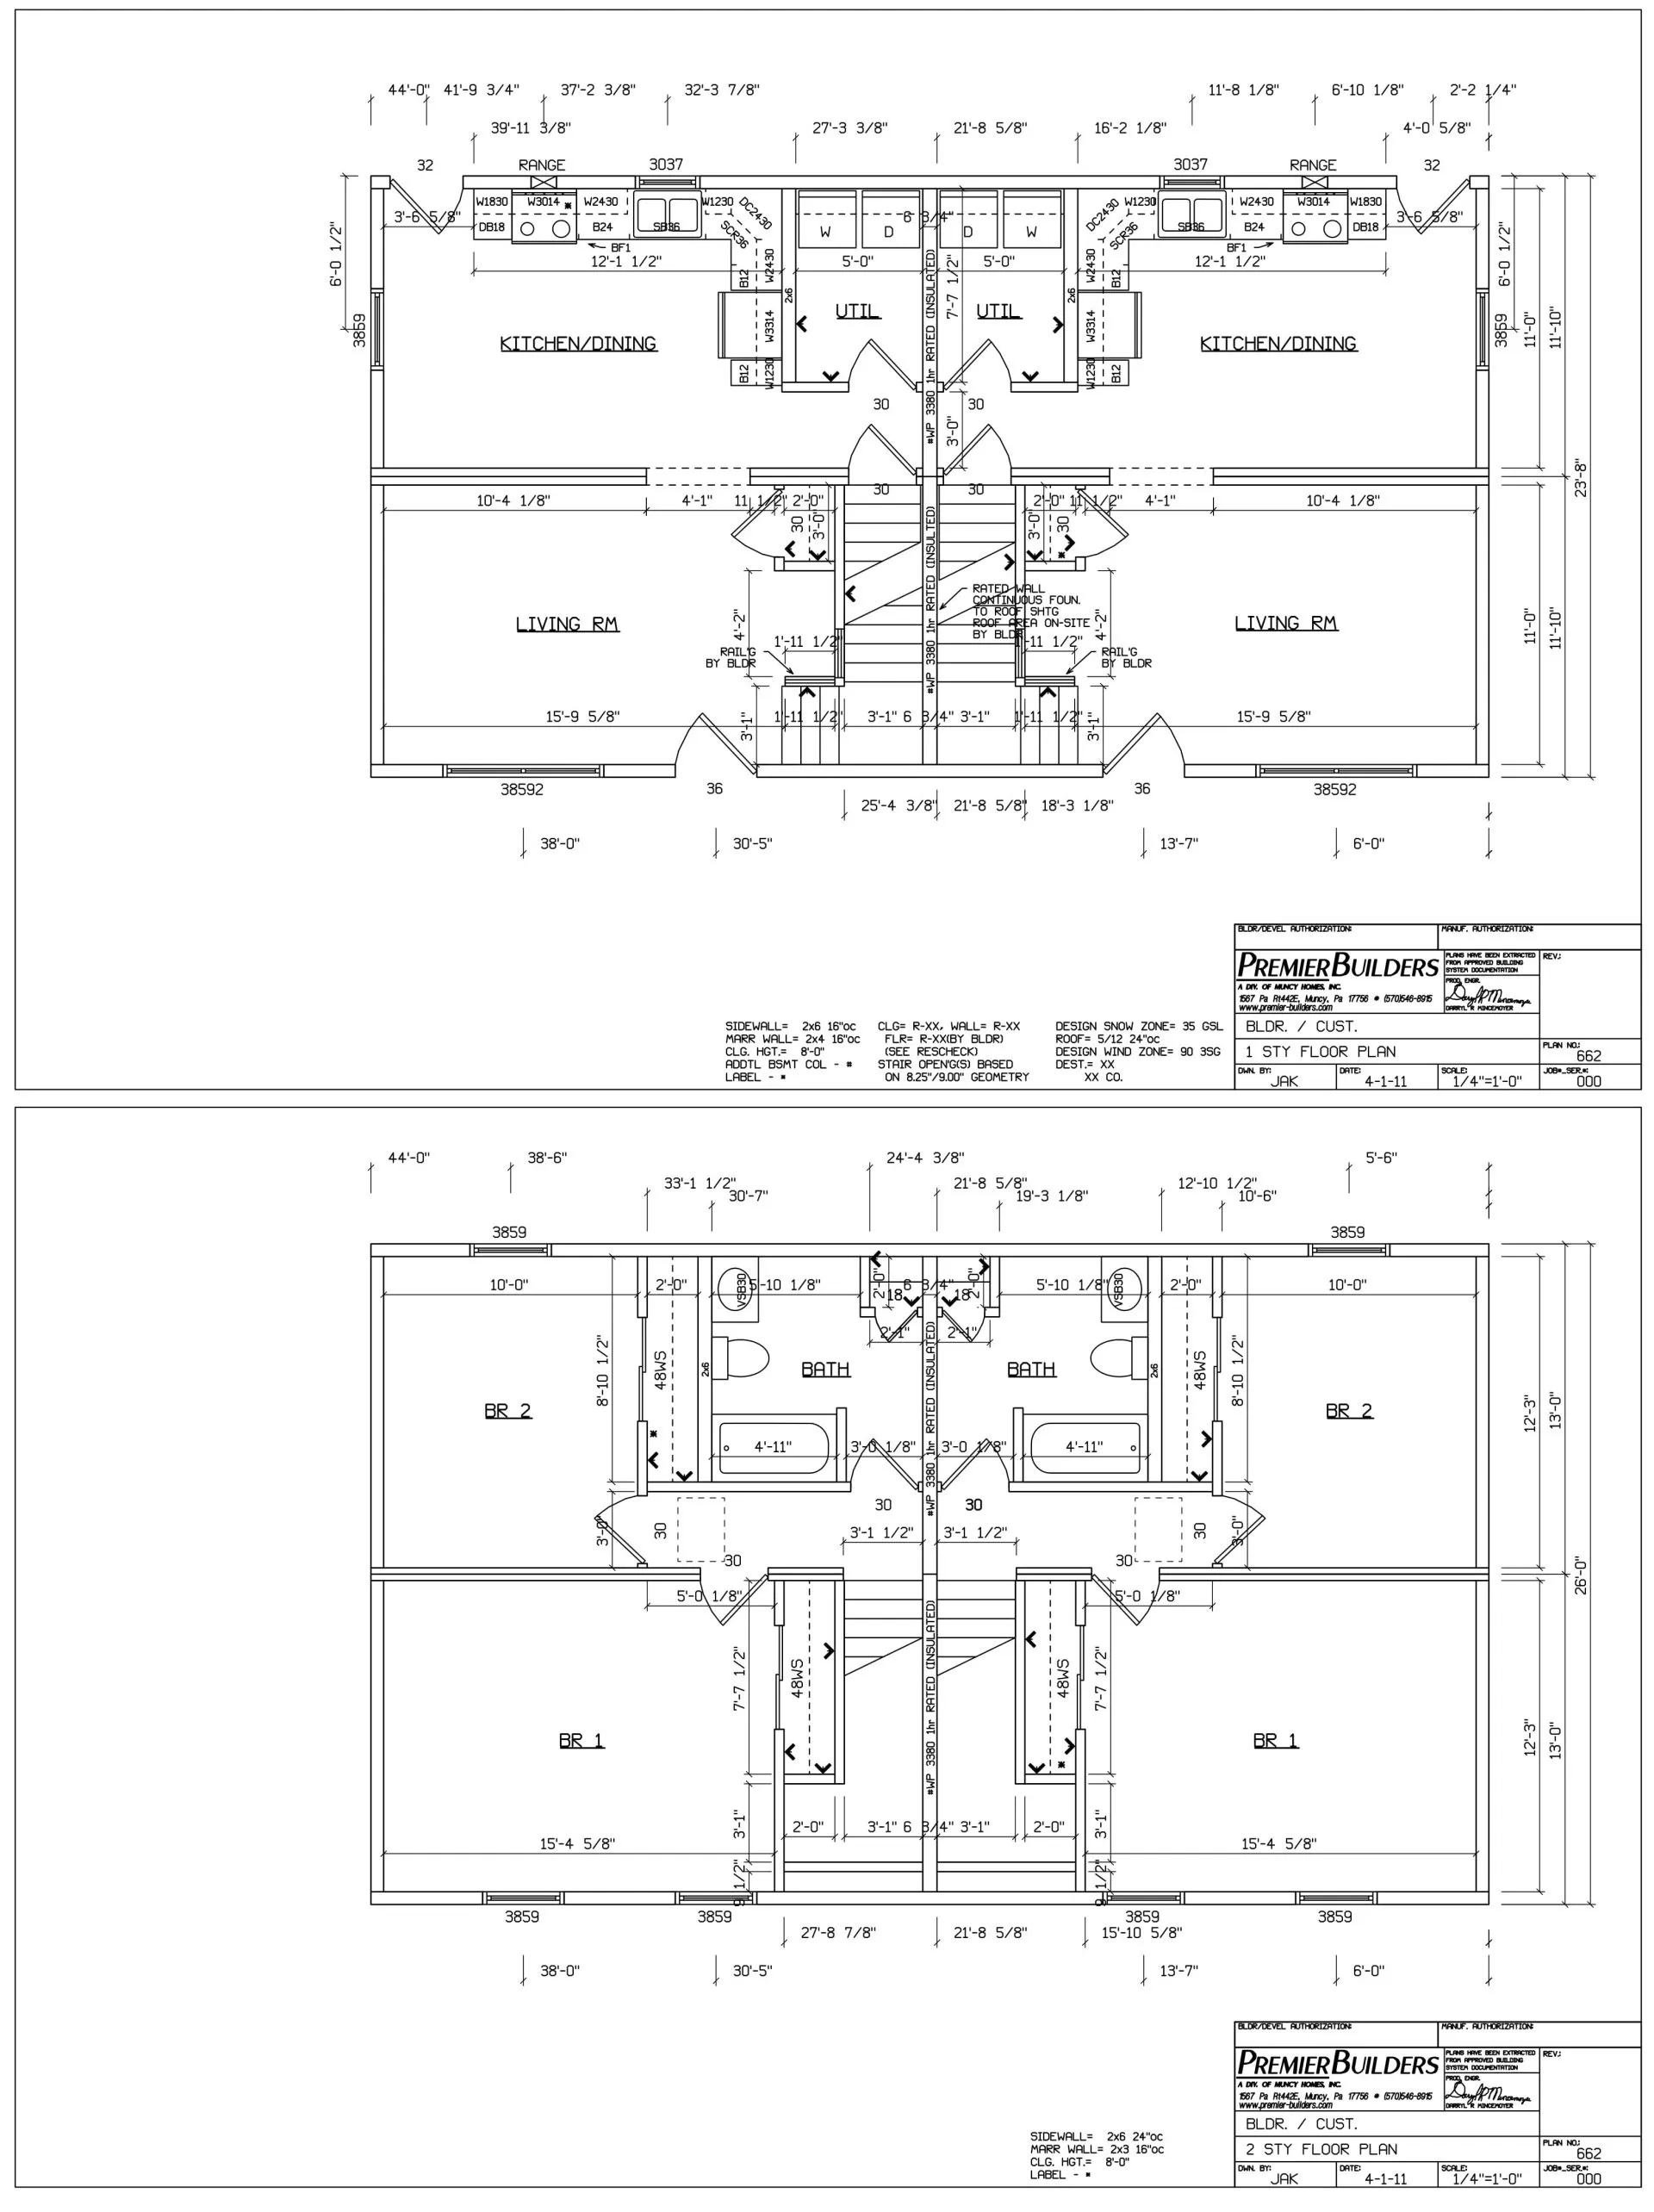 Floor plan for a modular home.